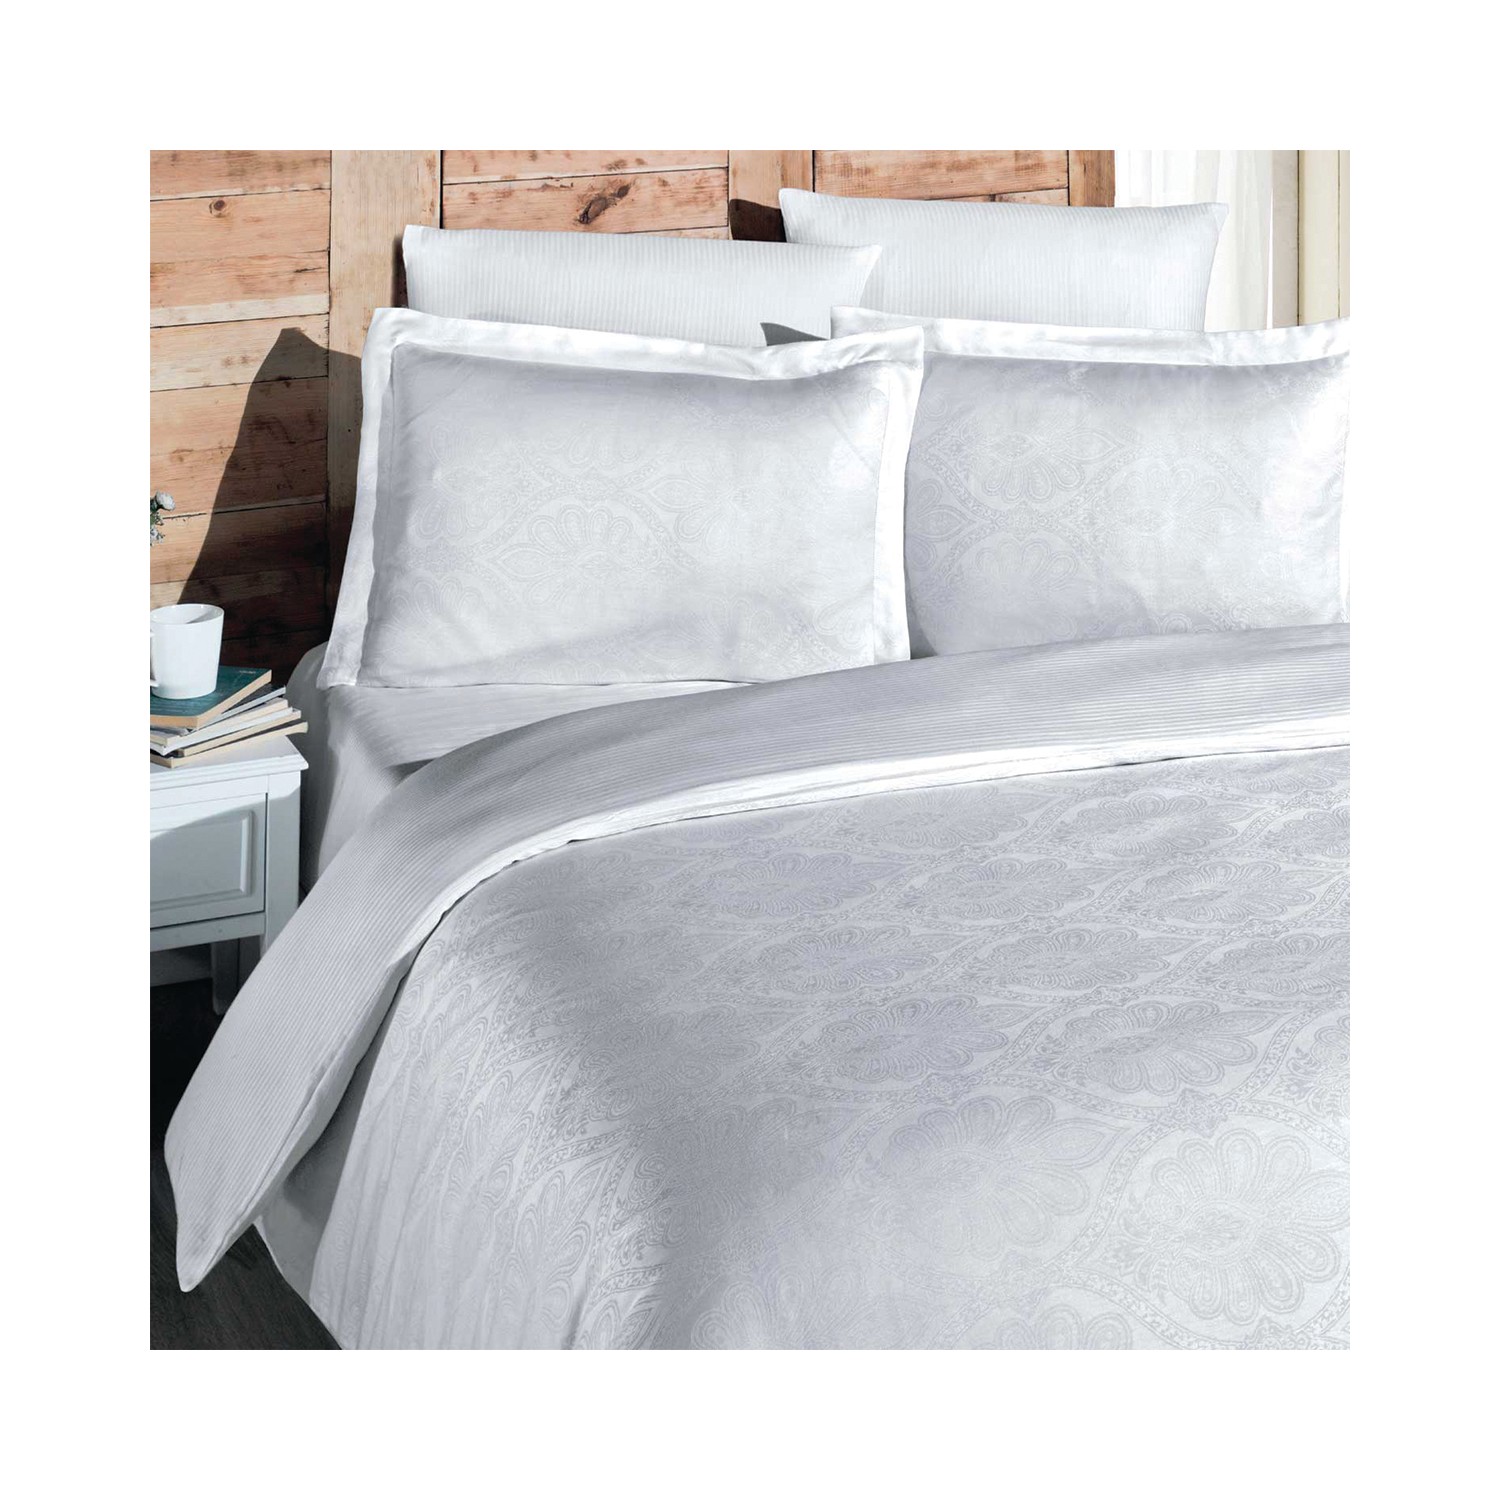 Комплект постельного белья Maxstyle Жаккардовый атласный комплект белых двойных пододеяльников Marko stone beyaz cilt dolgu topuk terlik